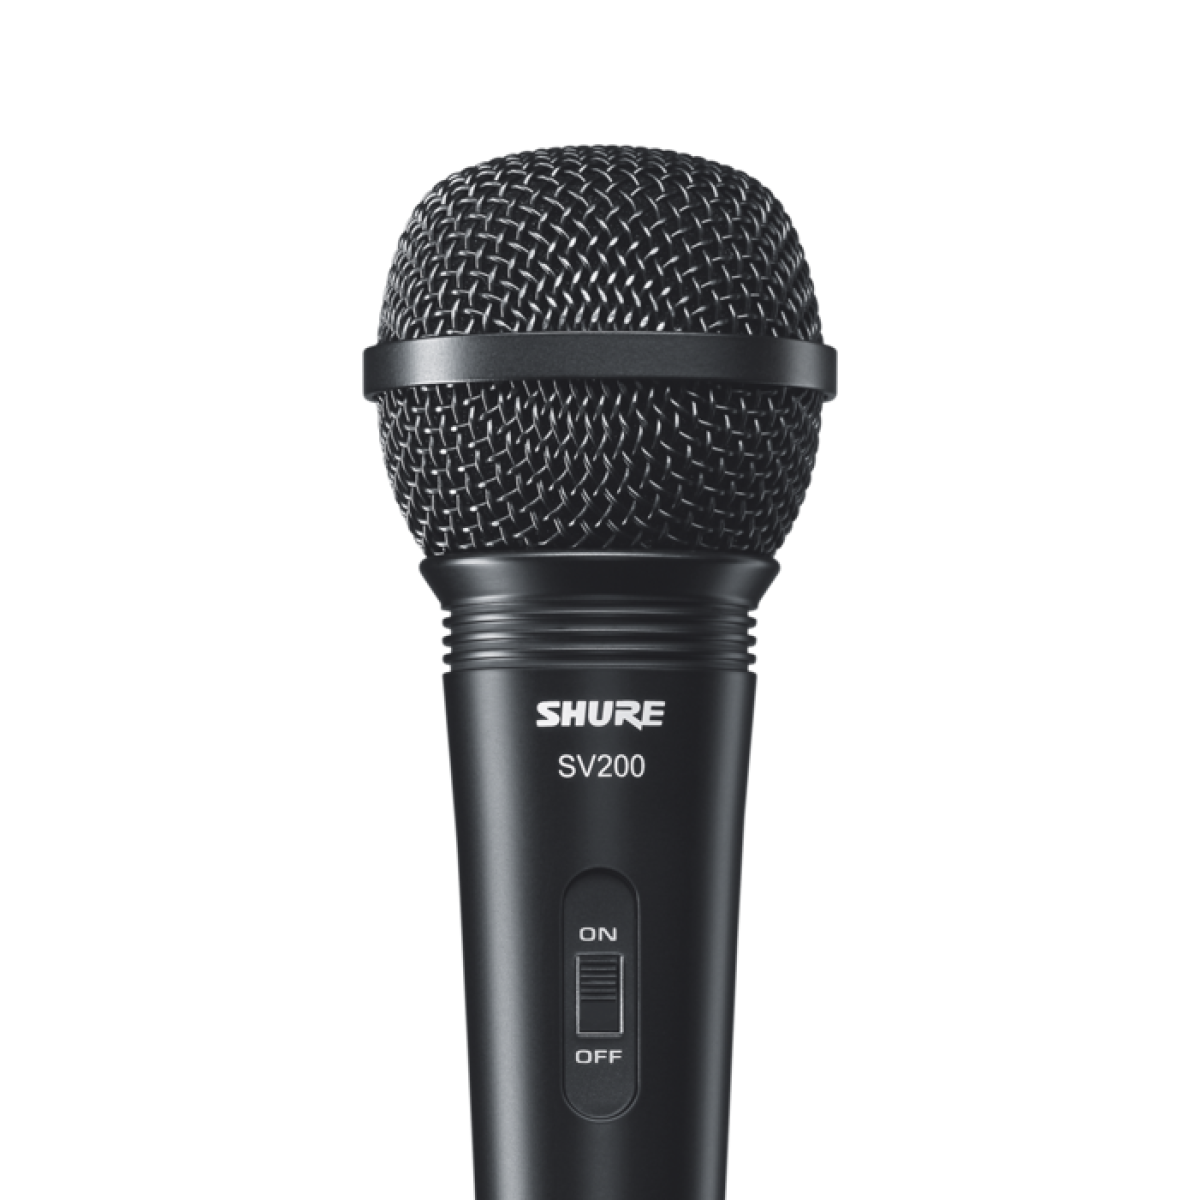 Микрофон Shure sv200-a. Микрофон Shure sv100-a. Ручные микрофоны Shure sv200-a. BM 200 микрофон. Микрофон шуре купить